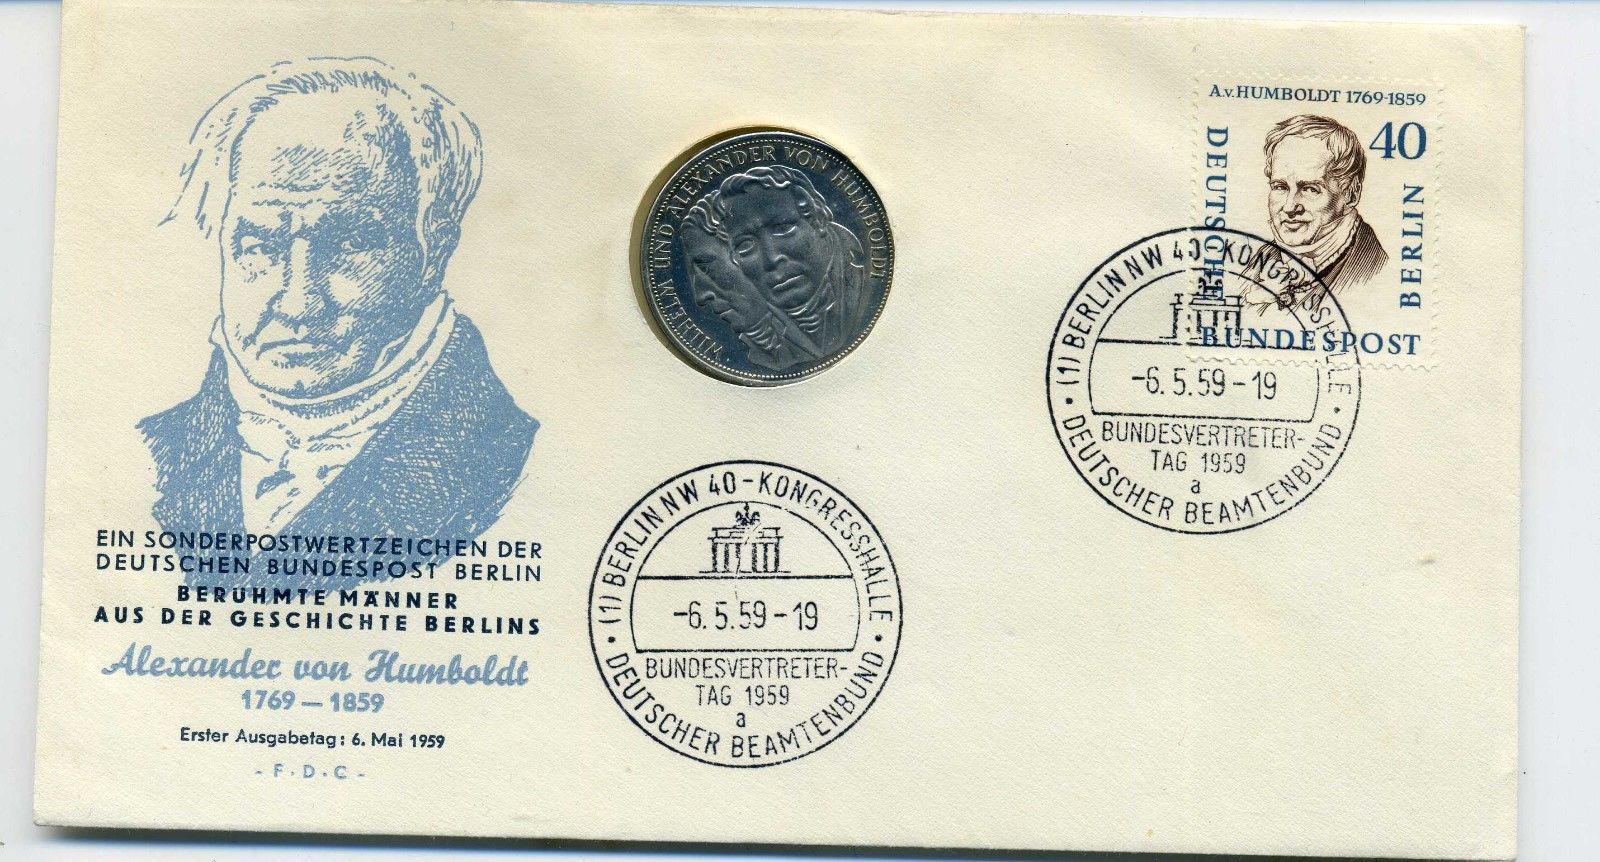  5 DM 1967 Humboldt in tollem Numisbrief/Ersttagsbrief RAR seltene Ausgabe   